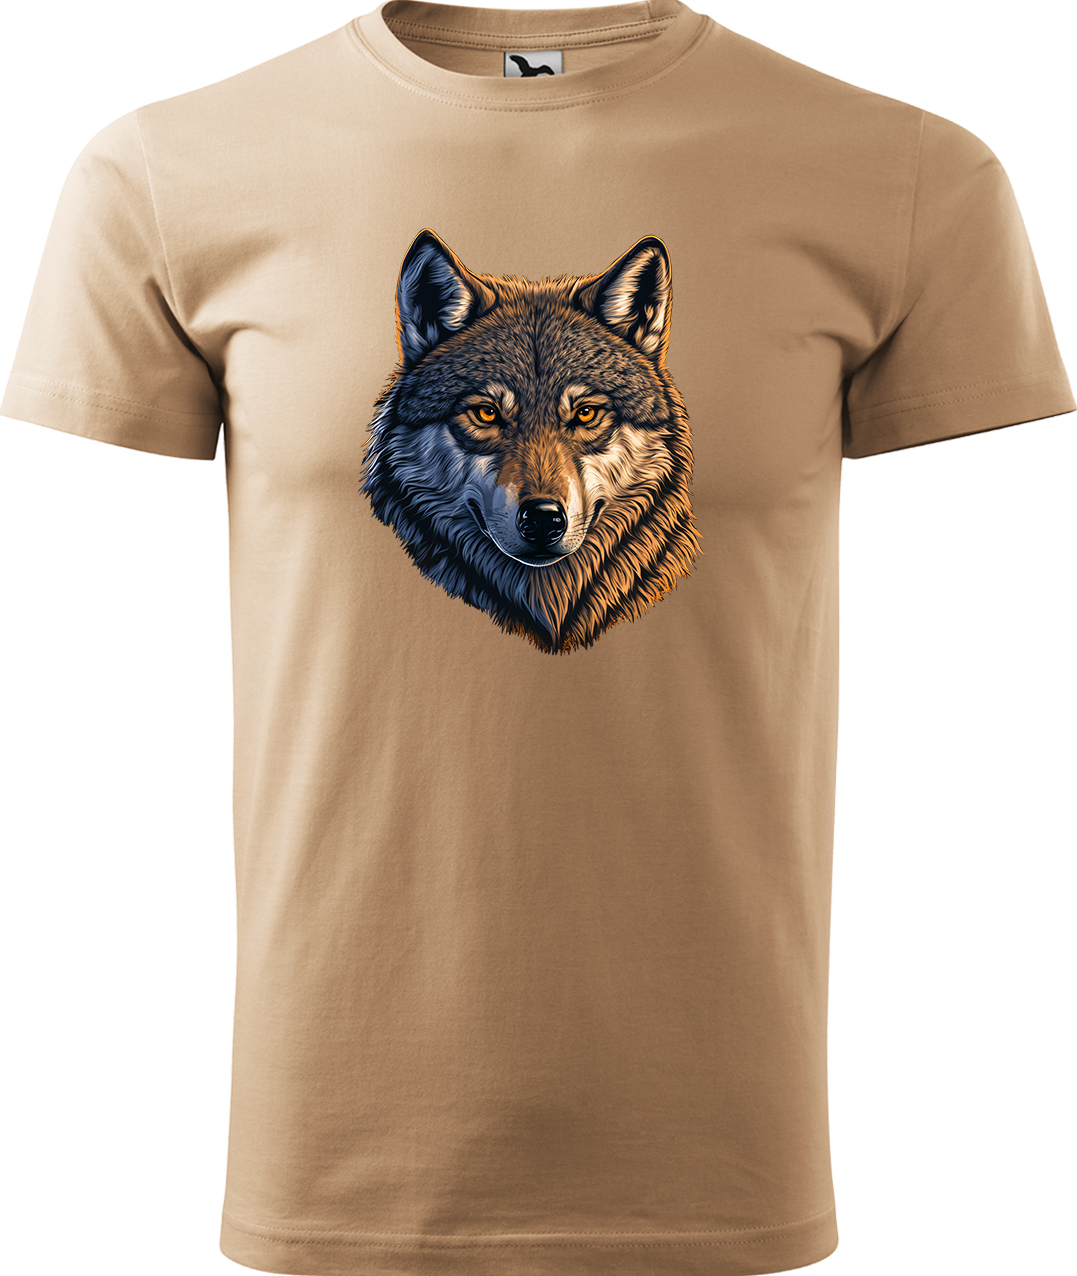 Pánské tričko s vlkem - Hlava vlka Velikost: XL, Barva: Písková (08), Střih: pánský